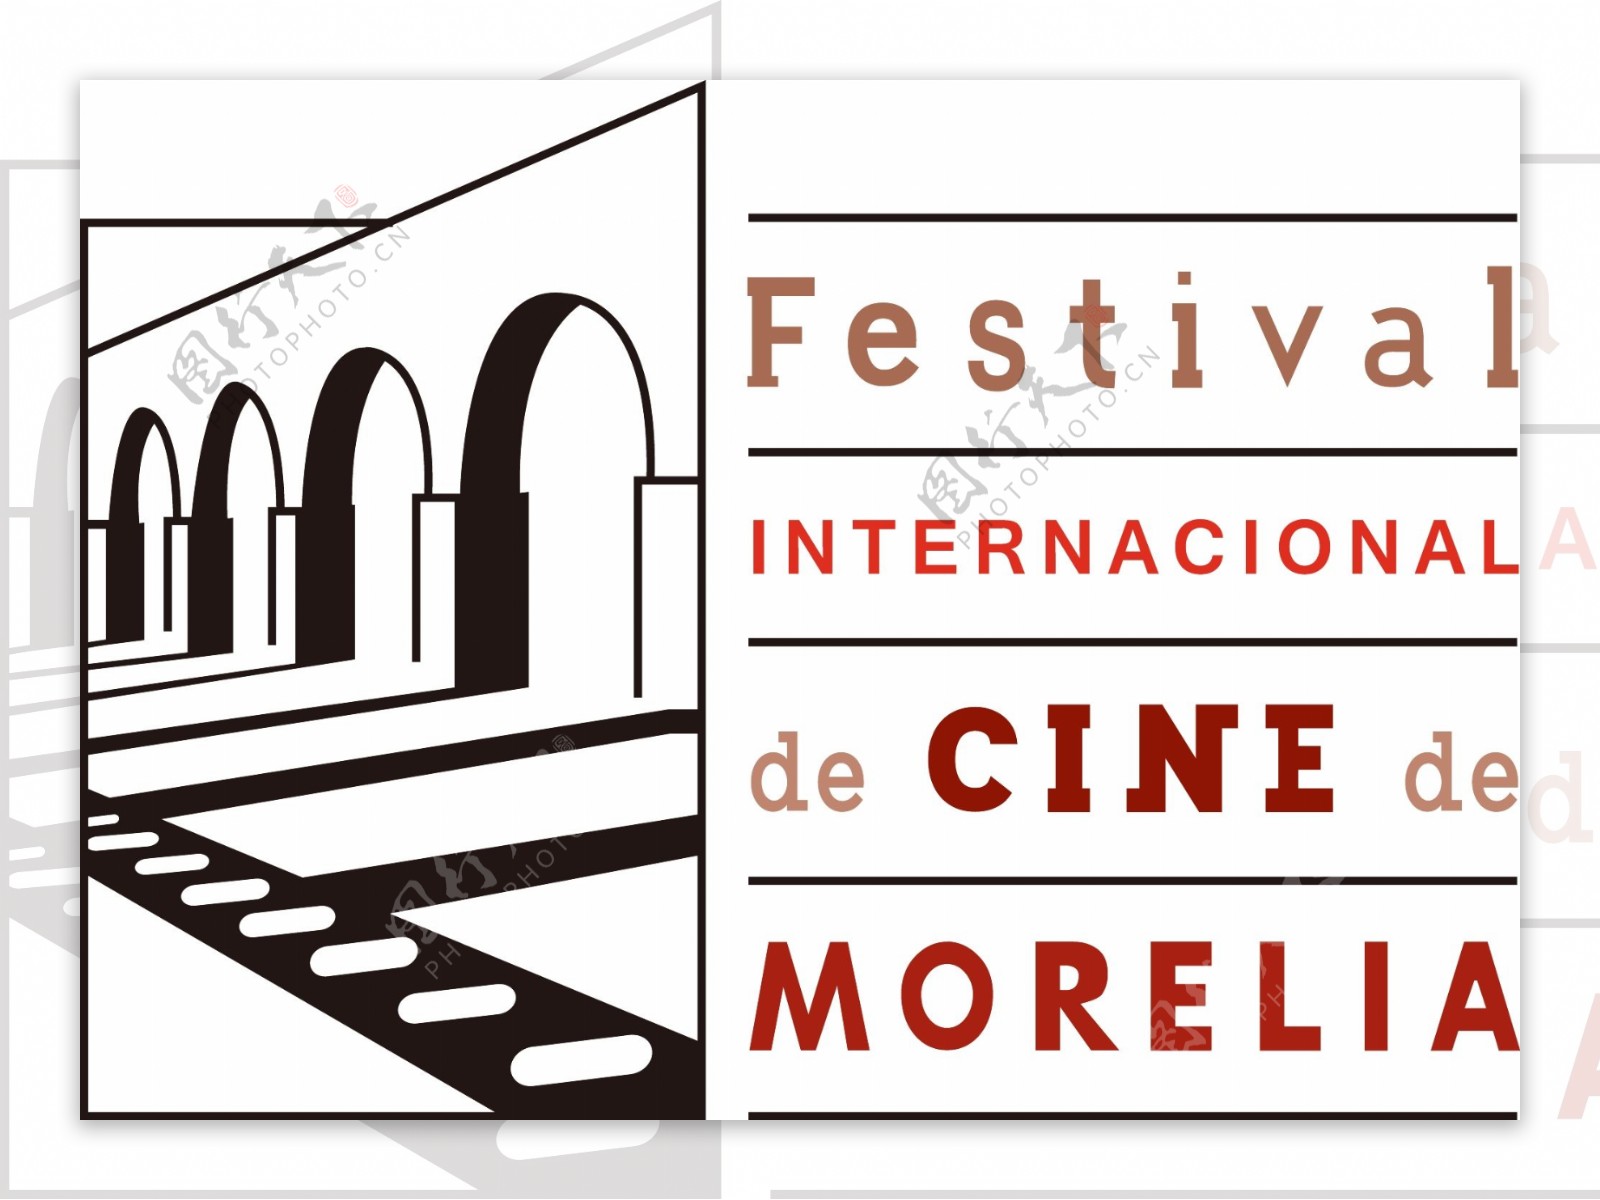 电影节标志矢量素材墨西哥莫雷利亚国际电影节